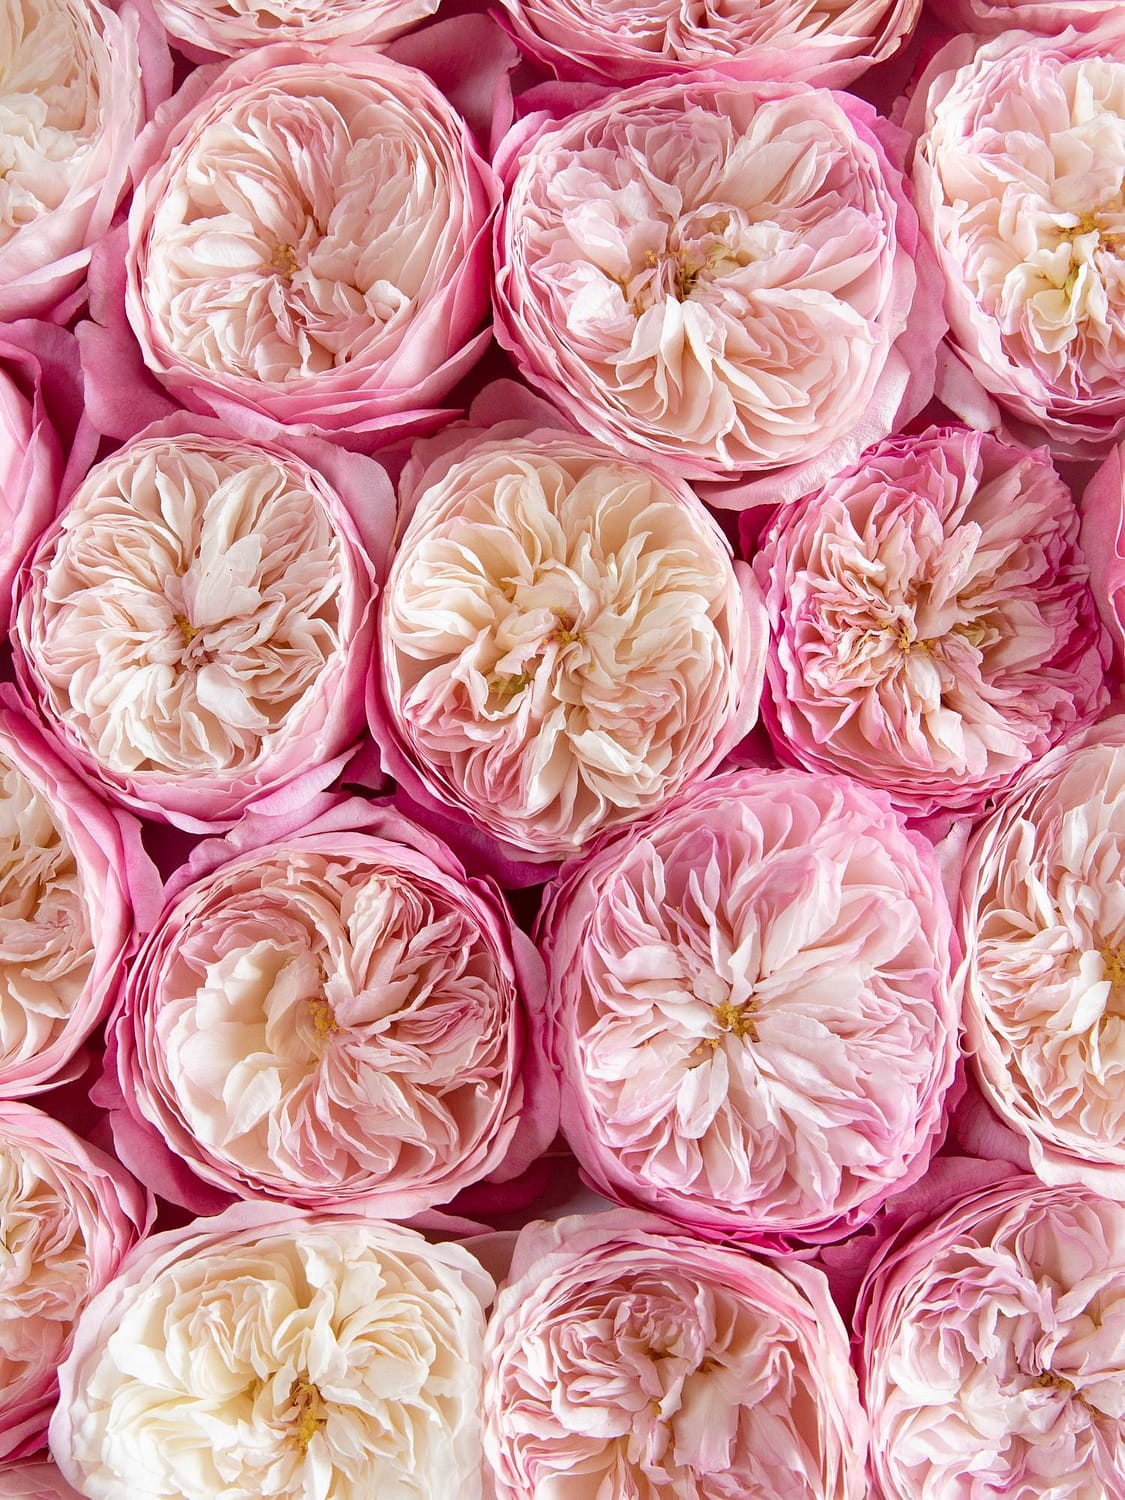 Fleurs ouvertes roses de roses de mariage David Austin